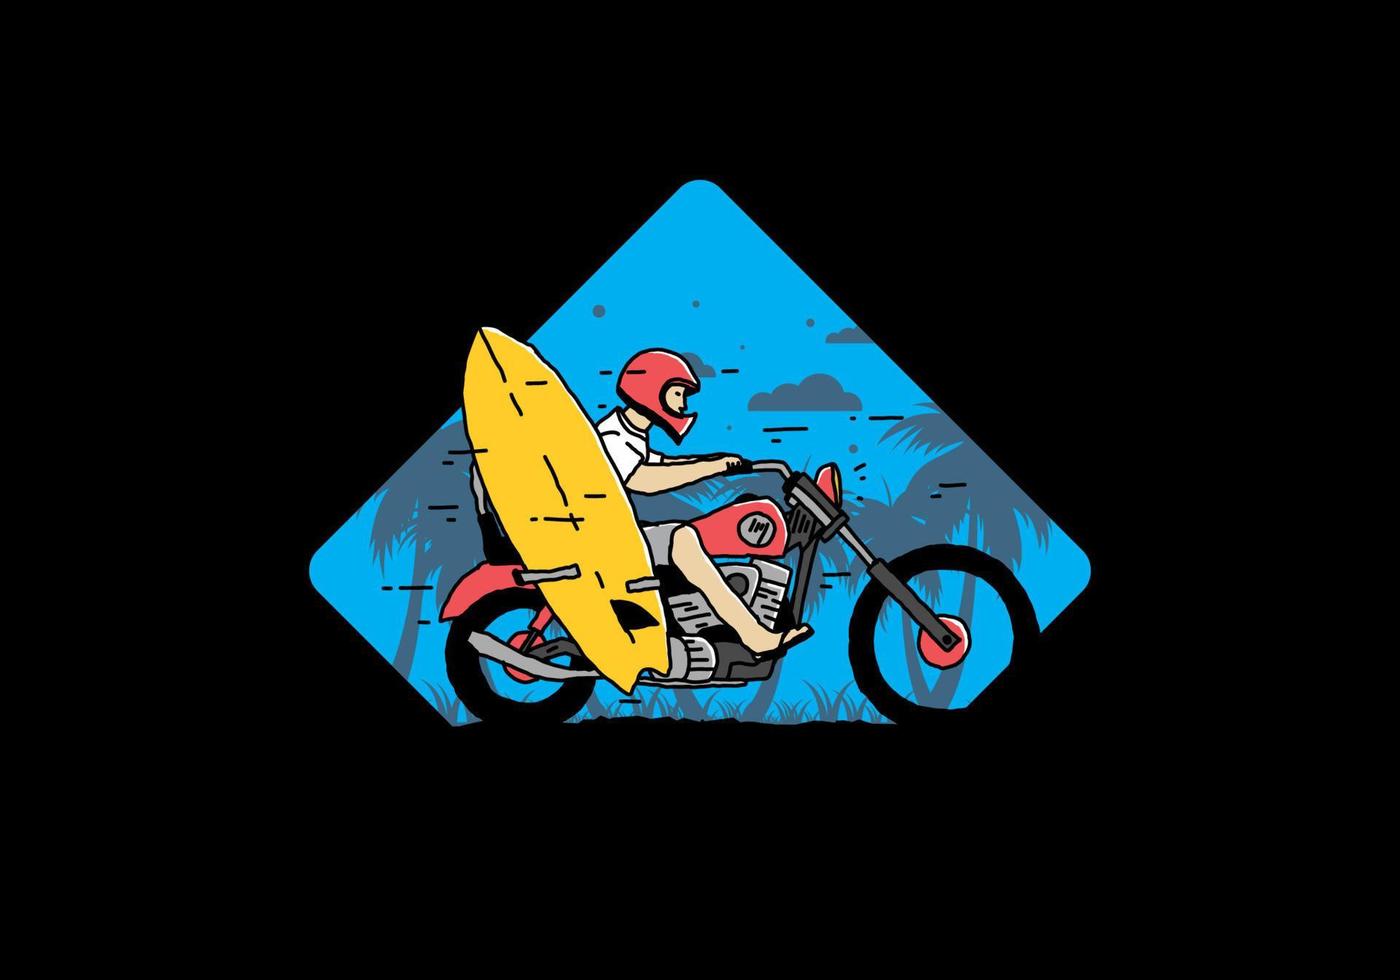 andar en motocicleta con ilustración de tabla de surf vector